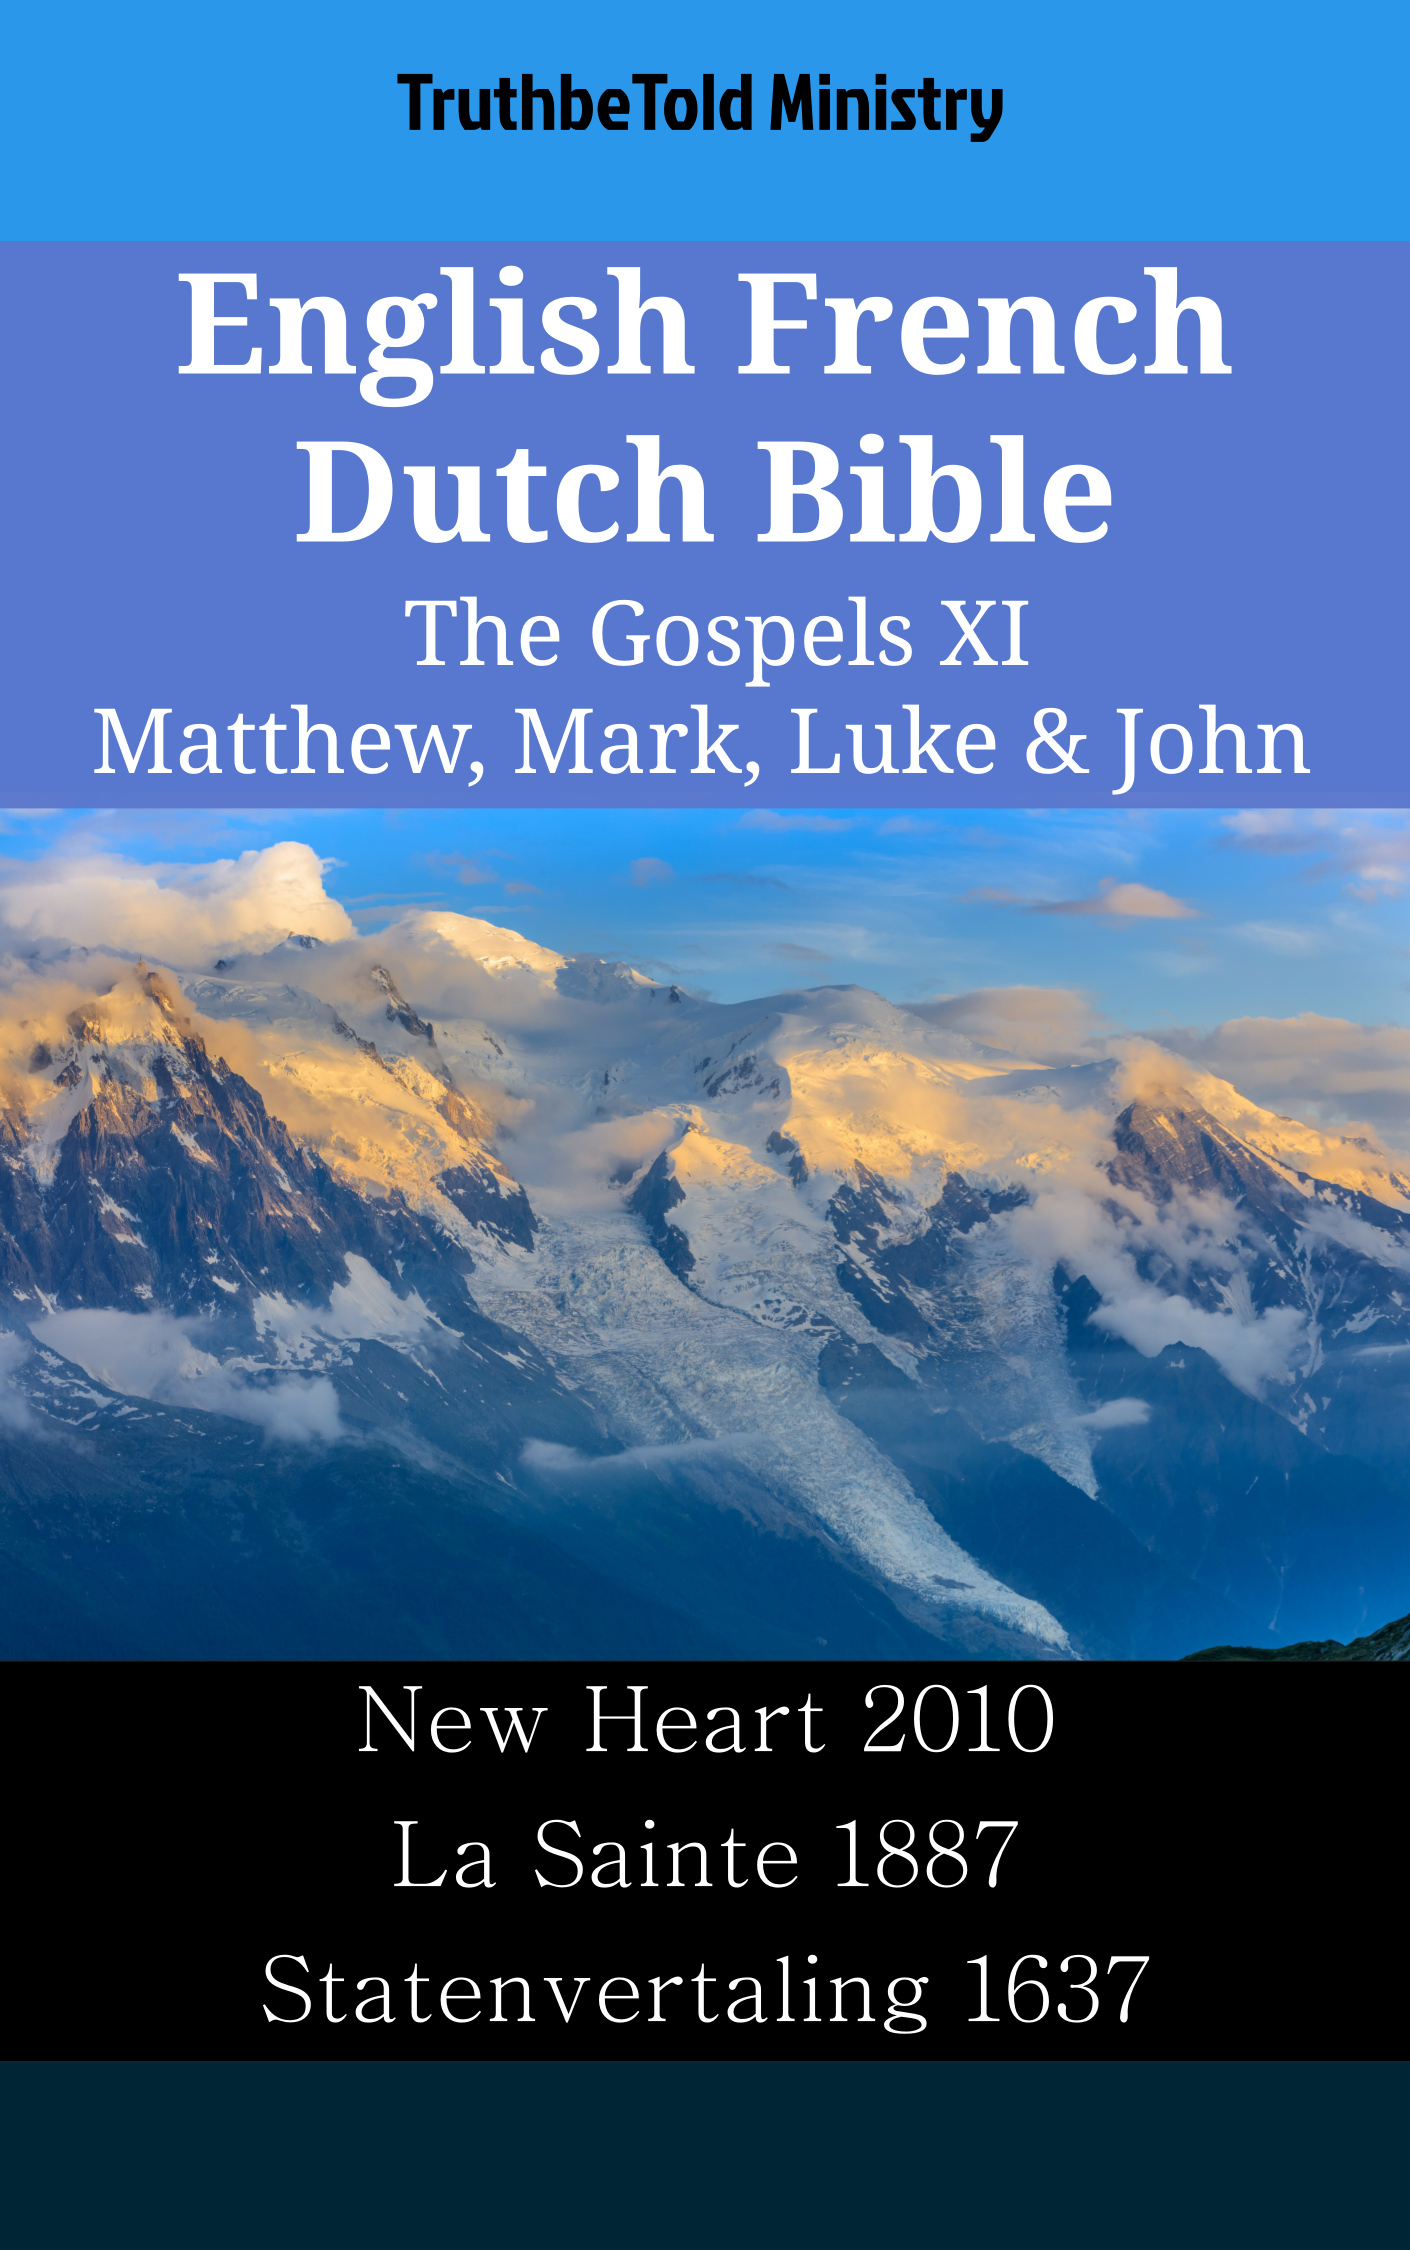 English French Dutch Bible - The Gospels XI - Matthew, Mark, Luke & John